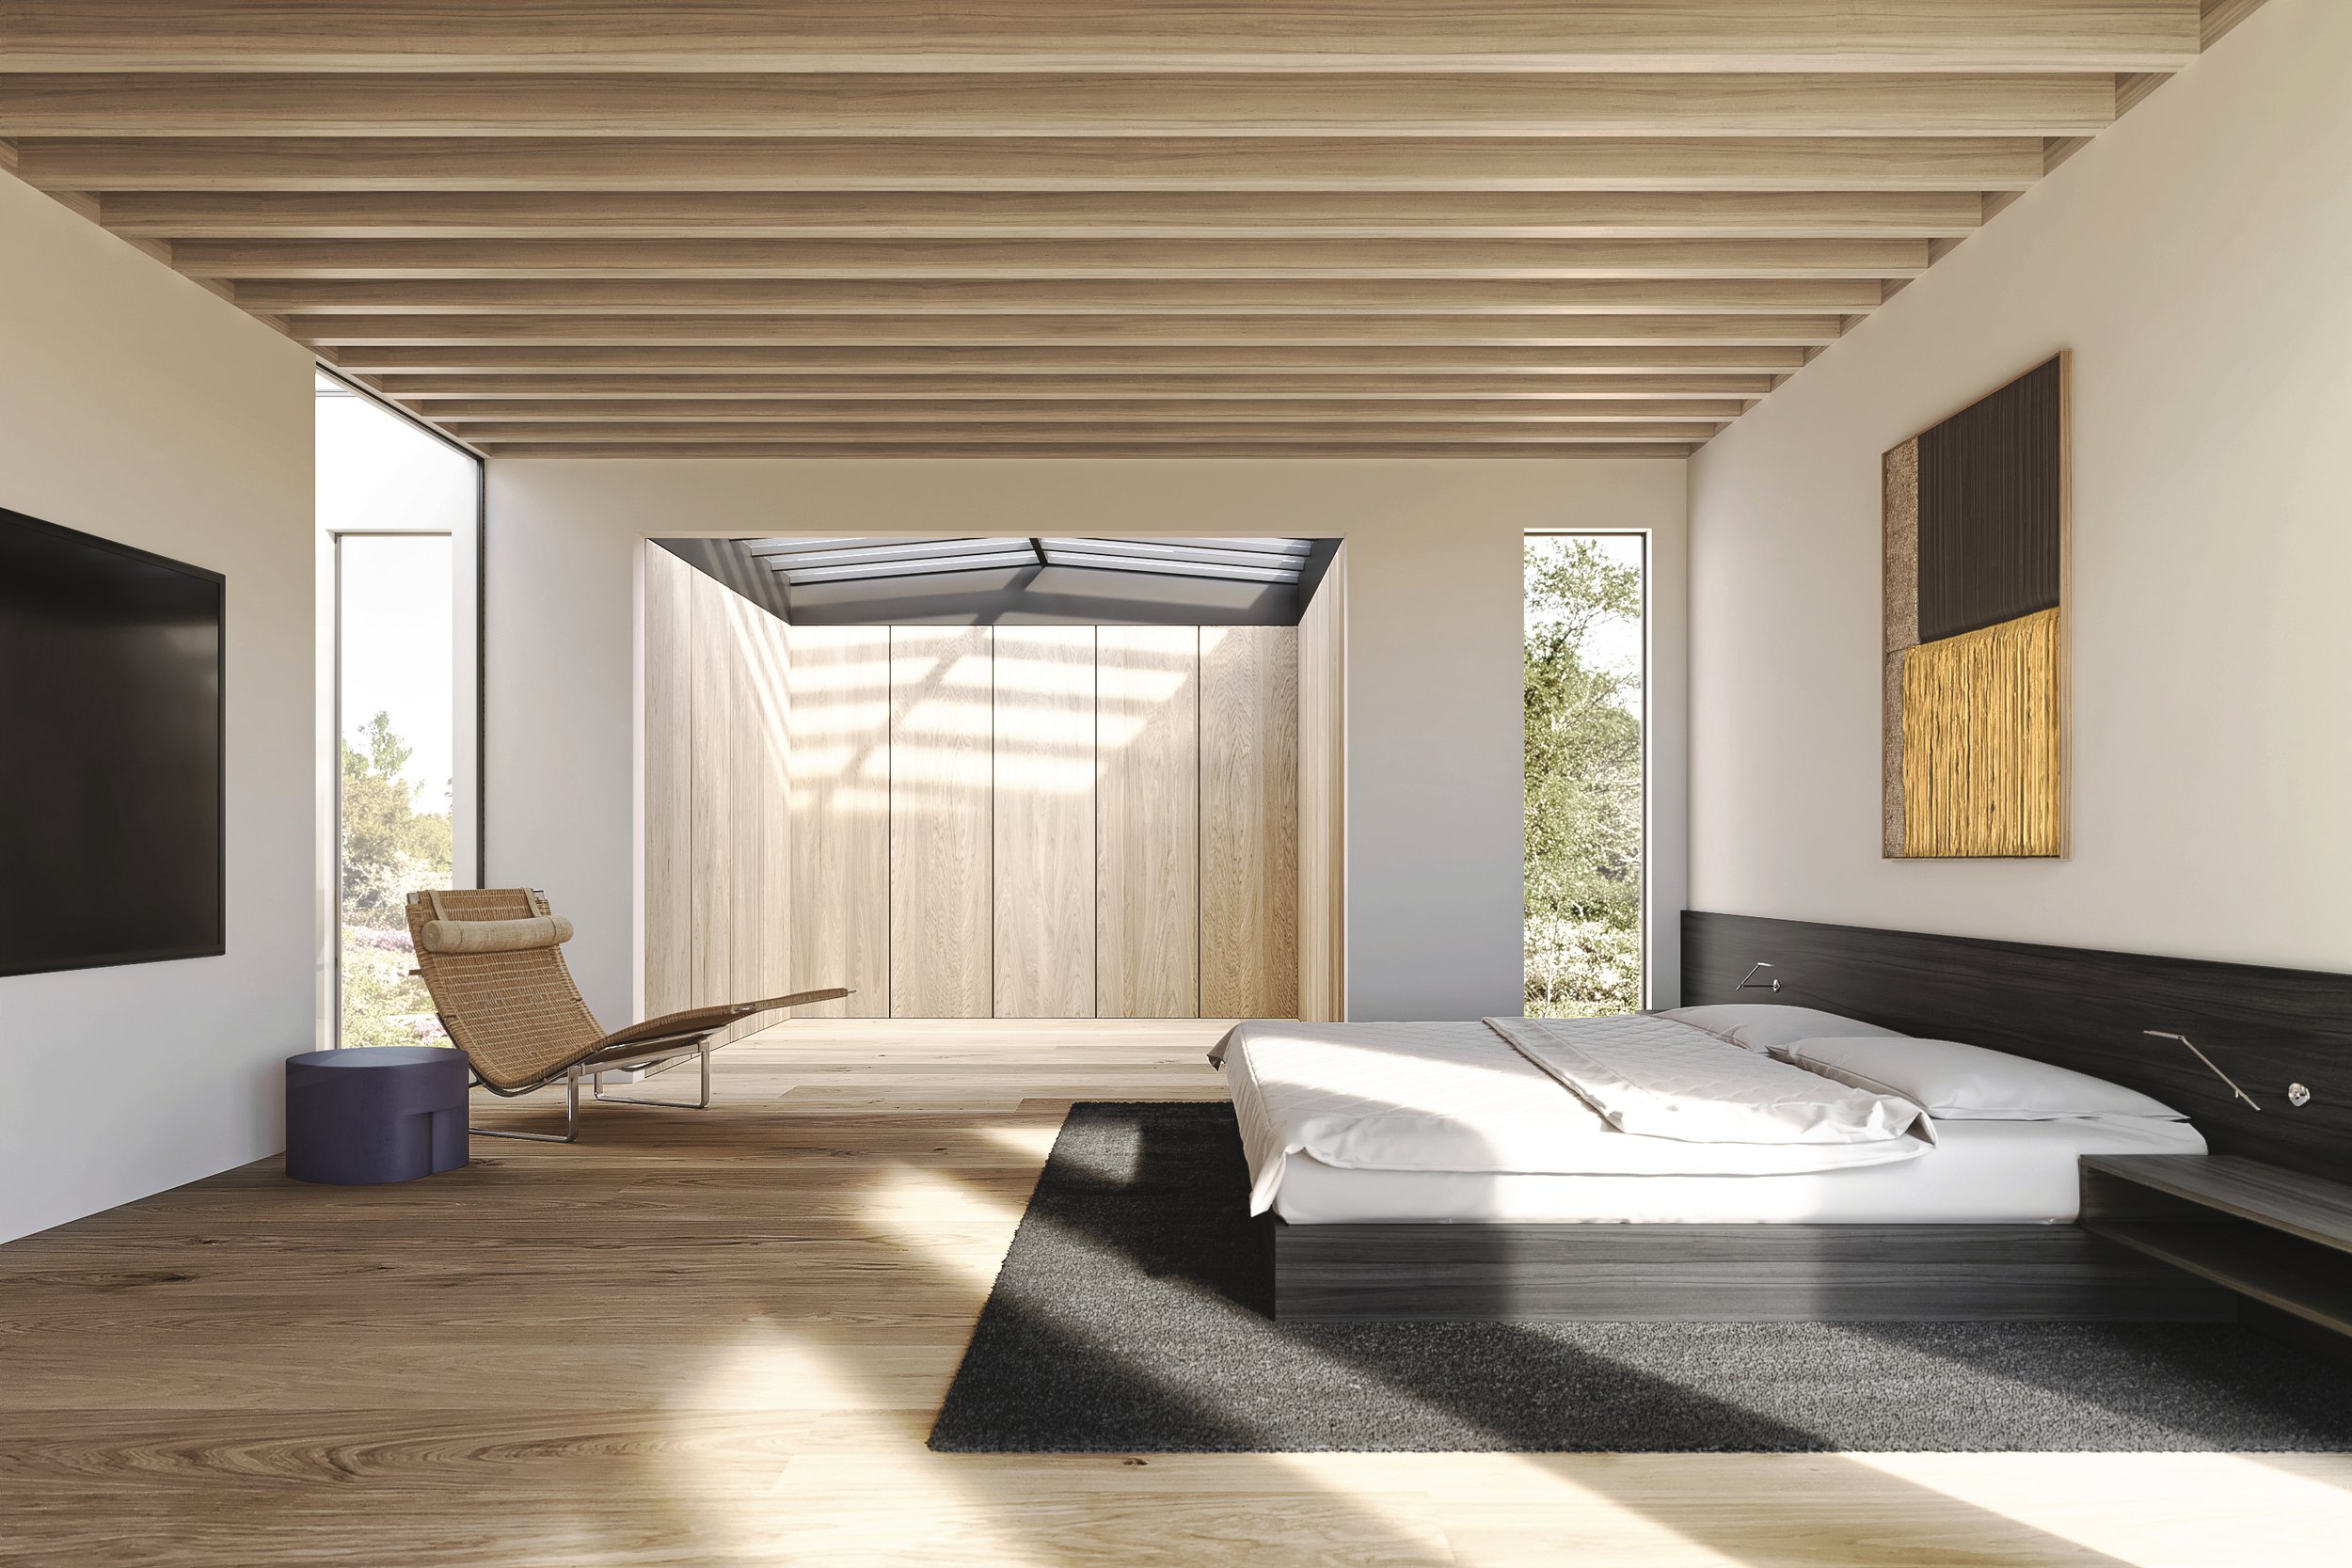 Bedroom, Dorland House. Rendering by renderus. Design by MAK Studio.